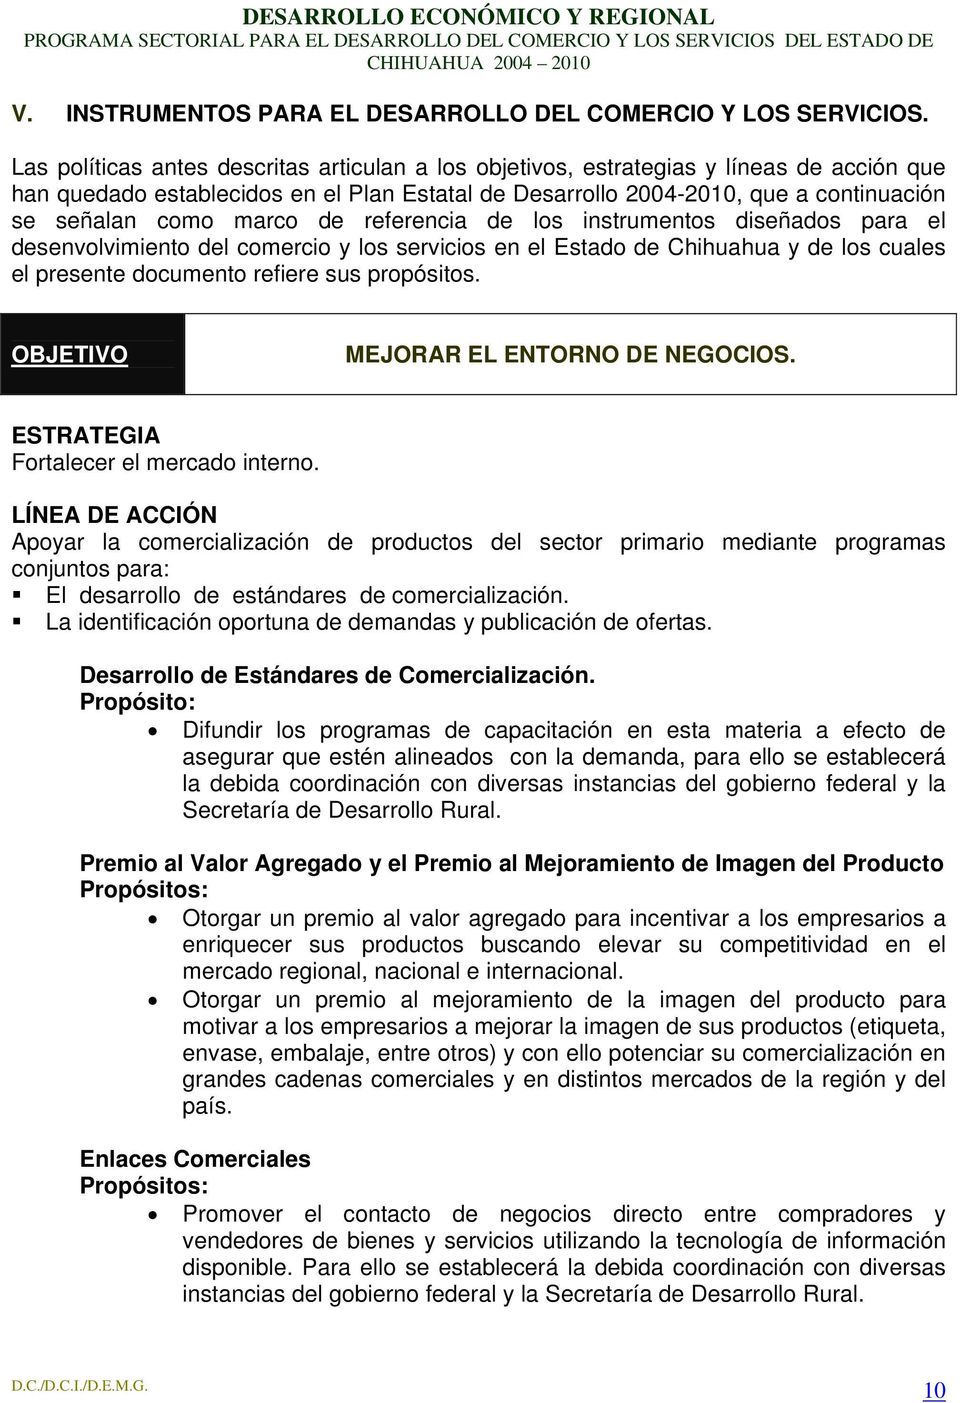 marco de referencia de los instrumentos diseñados para el desenvolvimiento del comercio y los servicios en el Estado de Chihuahua y de los cuales el presente documento refiere sus propósitos.